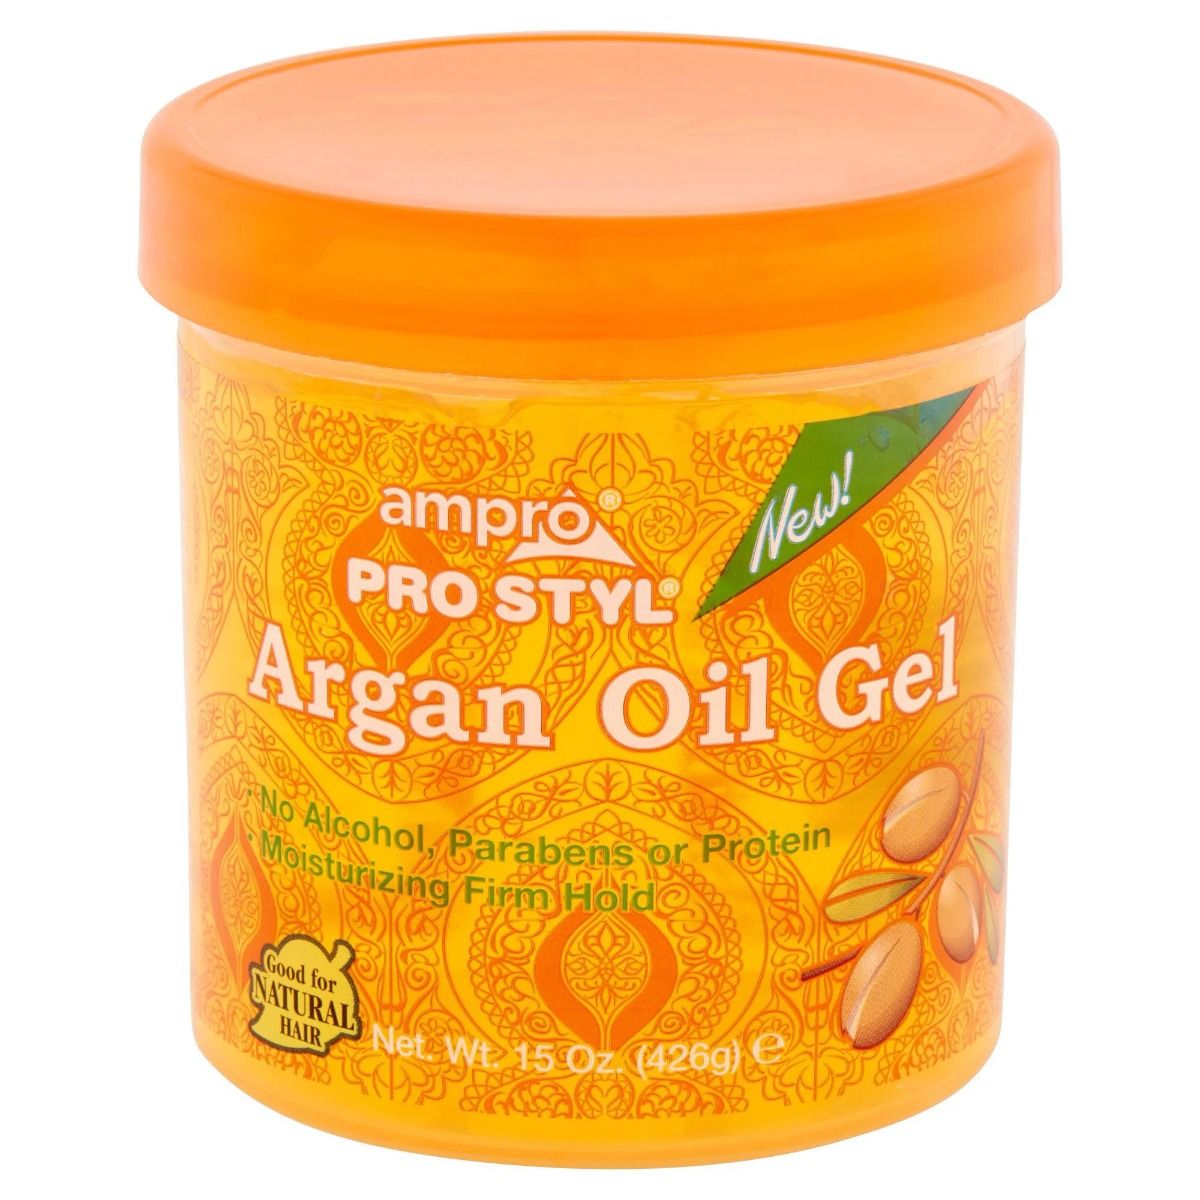 Ampro - Pro Style Argan Oil Gel 15oz